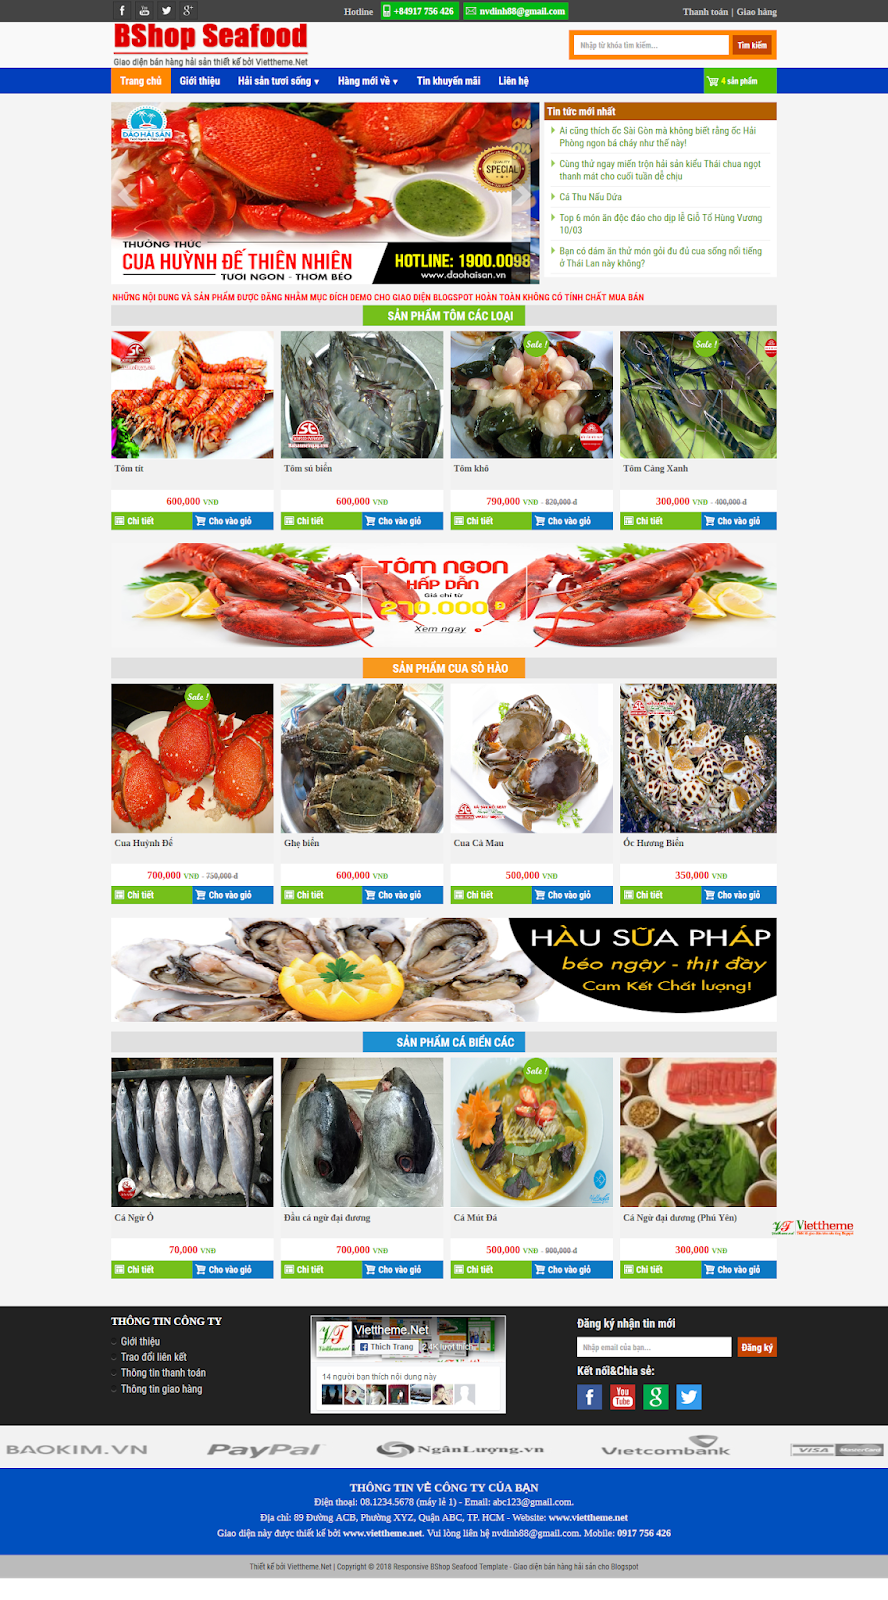 Bshop Seafood - Template diện bán hàng hải sản online dành cho Blogspot